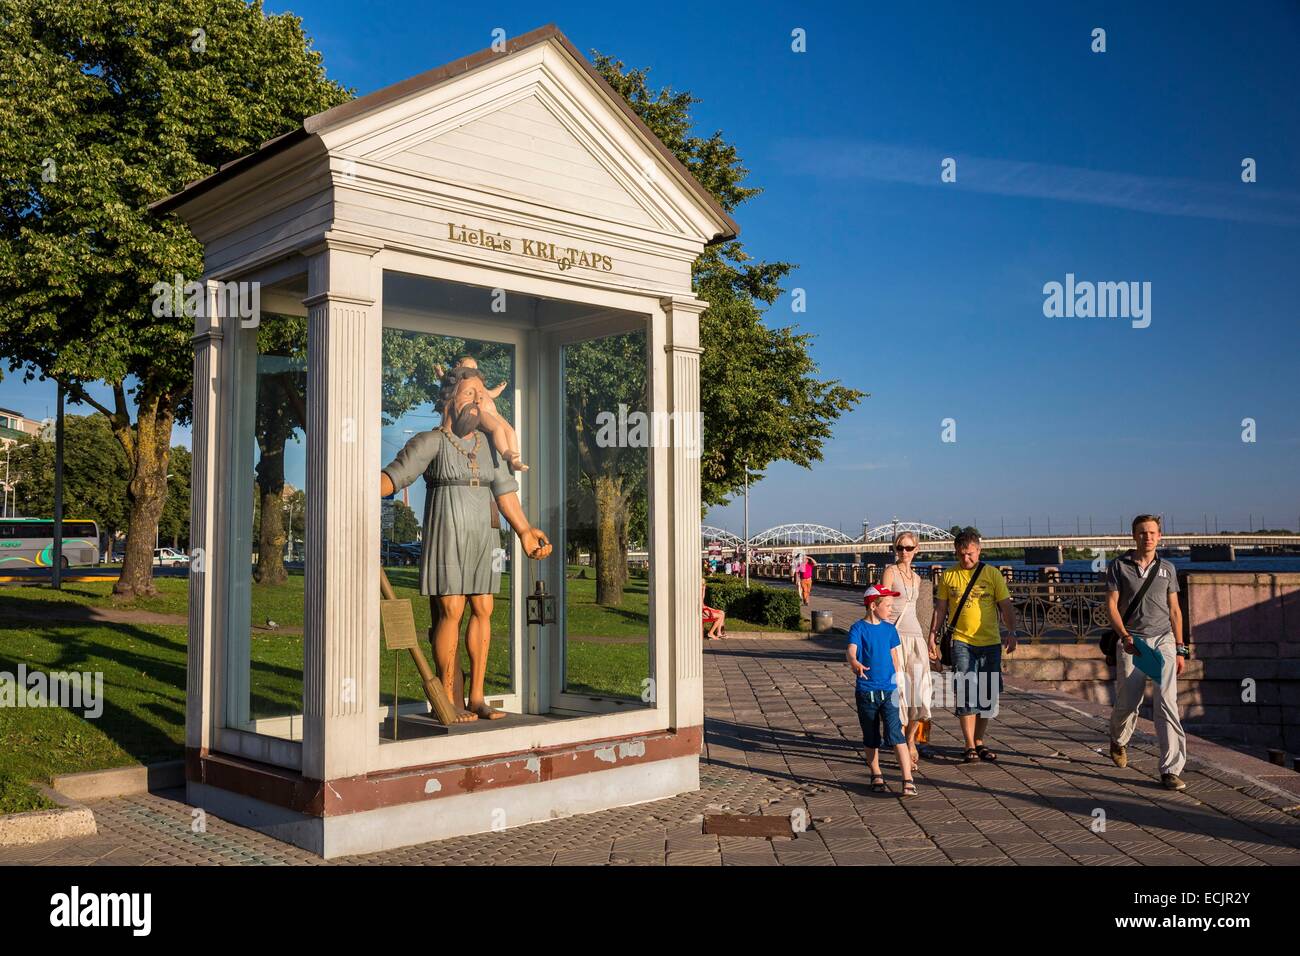 Lettonie (pays baltes), Riga, capitale européenne de la culture 2014, la sculpture du grand Christopher (Légende de Riga) sur les rives du fleuve Daugava Banque D'Images